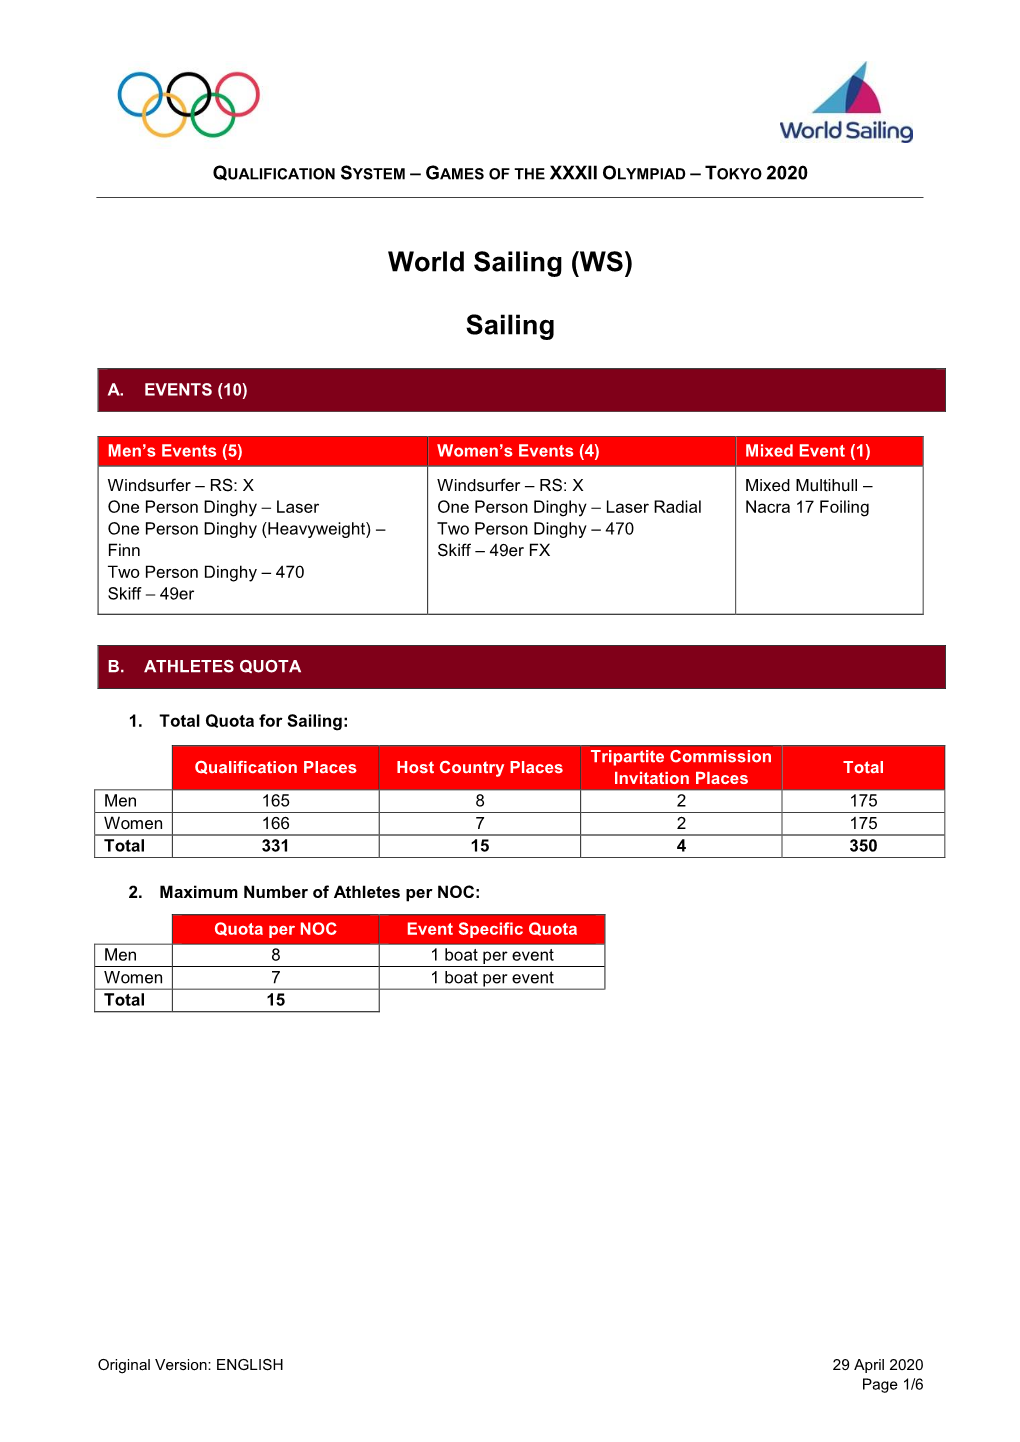 World Sailing (WS) Sailing